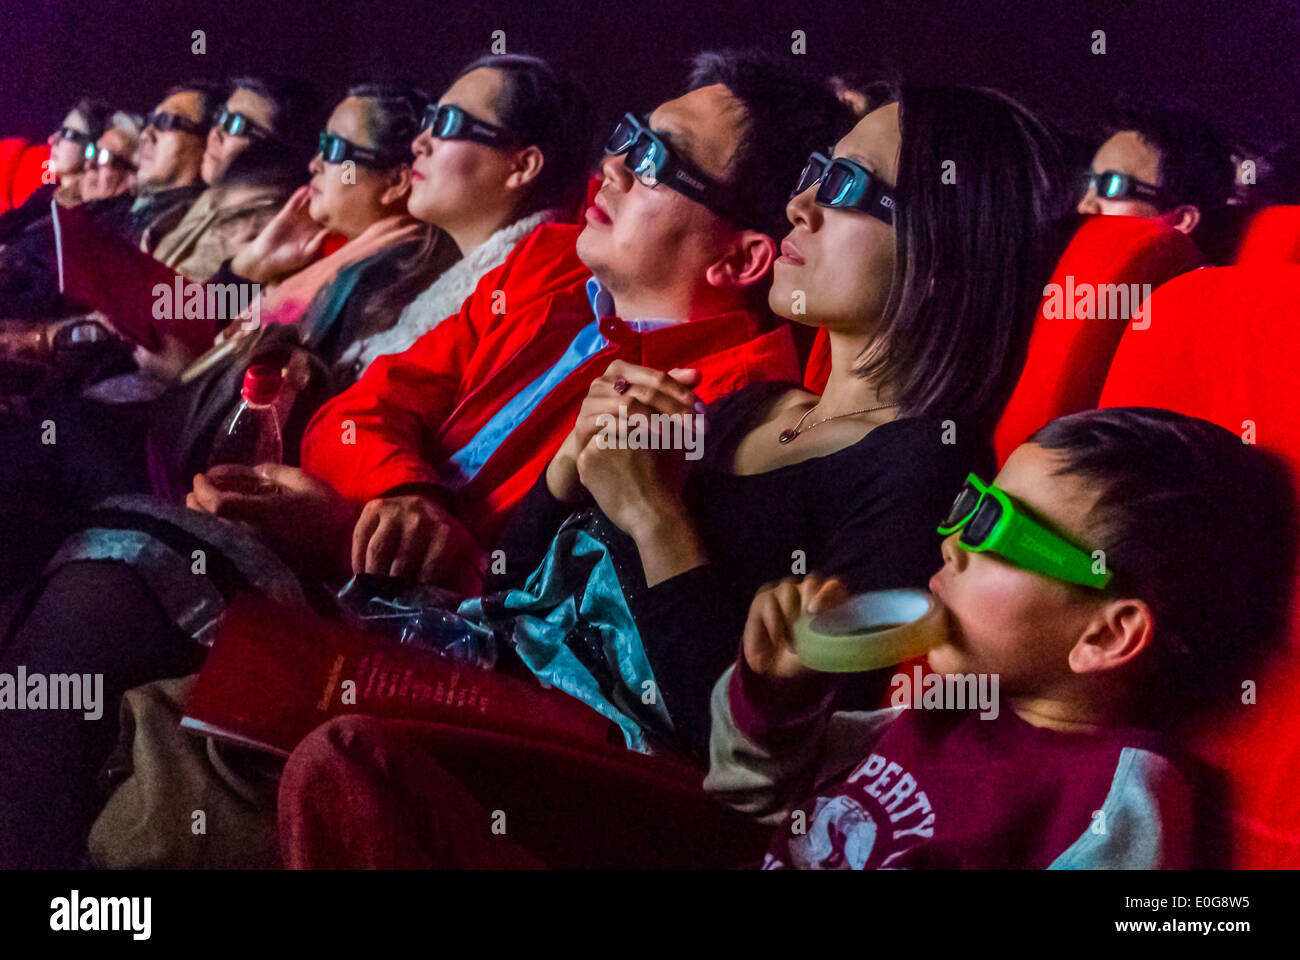 Paris, Frankreich, große Menschenmengen, chinesisches Publikum, das eine spezielle Brille trägt, während sie einen 3D-Film beim Chinesischen Filmfestival in Frankreich sehen, bei einer Veranstaltung im Gaumont Cinema auf den Champs-Elysées. Leute im Kino, chinesische Menschengesichter Stockfoto